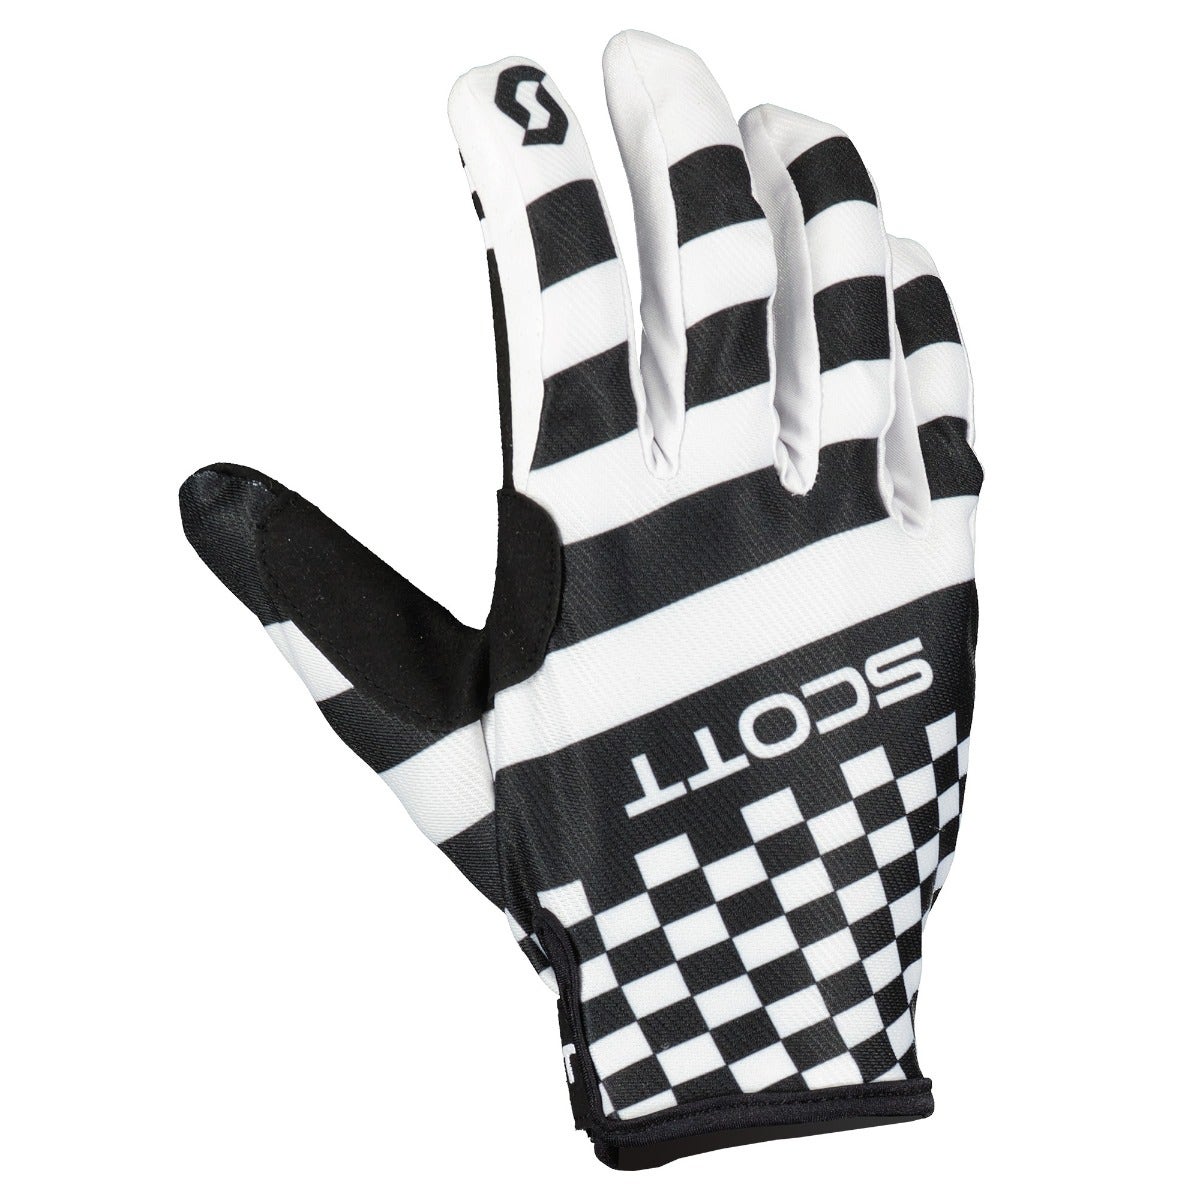 Scott 350 Prospect Evo Glove Black/White